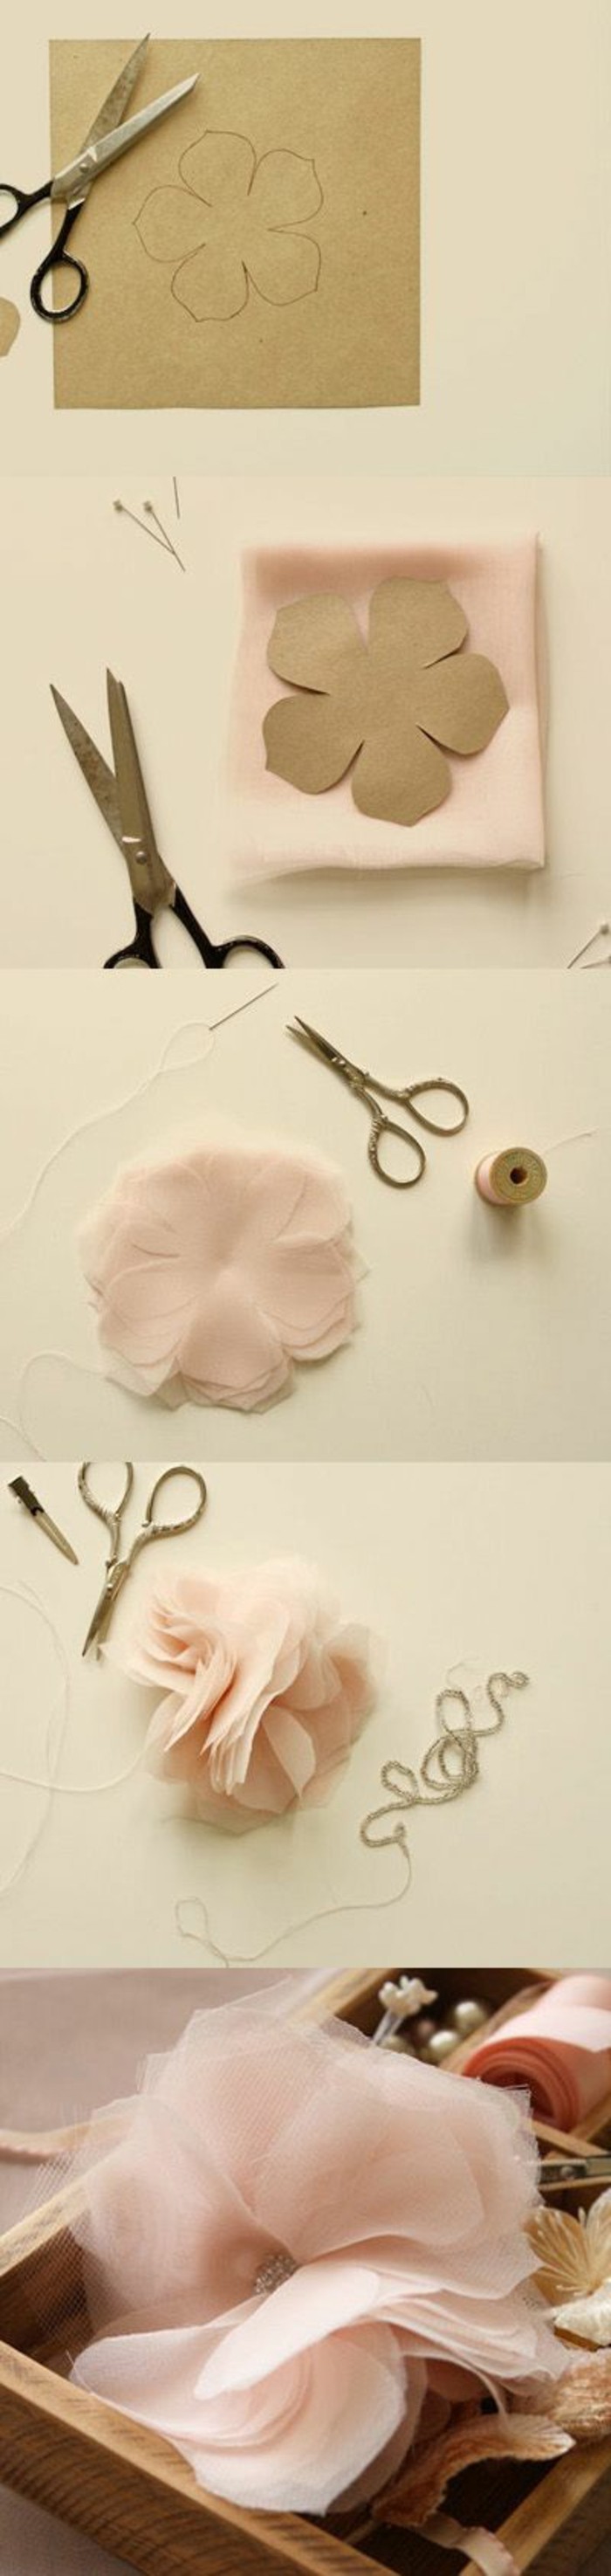 comment-faire-des-fleurs-en-tissu-de-soie-rose-diy-tutoriel-pour-fleur-en-tissu-technique-facile-a-realiser-decoration-fleur-bandeau-de-tete-chignon-bun